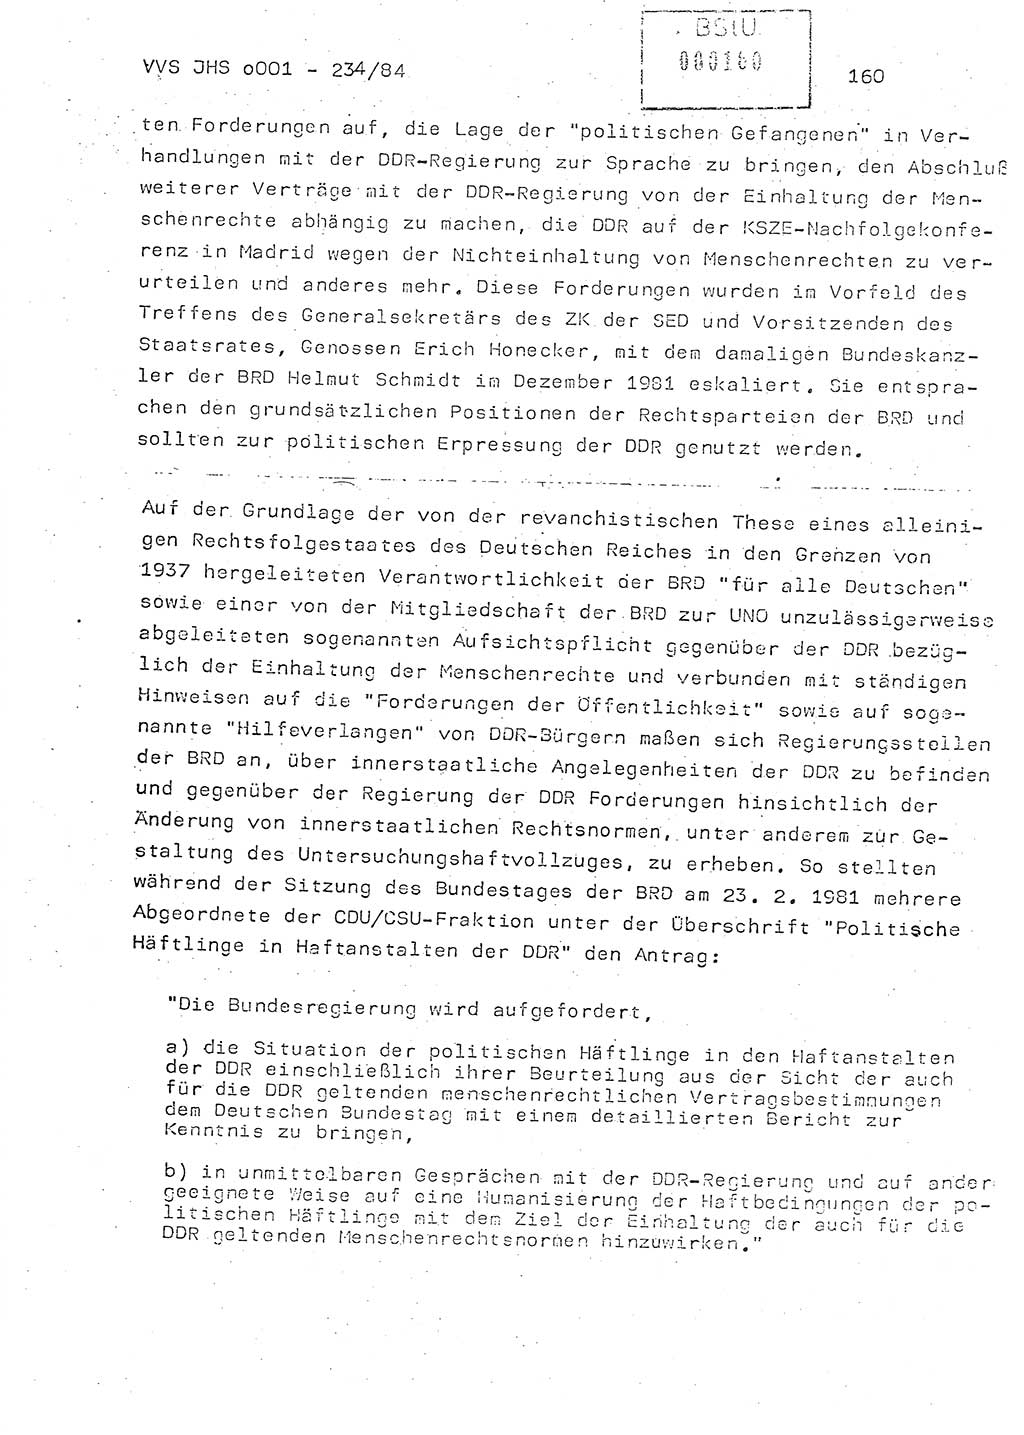 Dissertation Oberst Siegfried Rataizick (Abt. ⅩⅣ), Oberstleutnant Volkmar Heinz (Abt. ⅩⅣ), Oberstleutnant Werner Stein (HA Ⅸ), Hauptmann Heinz Conrad (JHS), Ministerium für Staatssicherheit (MfS) [Deutsche Demokratische Republik (DDR)], Juristische Hochschule (JHS), Vertrauliche Verschlußsache (VVS) o001-234/84, Potsdam 1984, Seite 160 (Diss. MfS DDR JHS VVS o001-234/84 1984, S. 160)